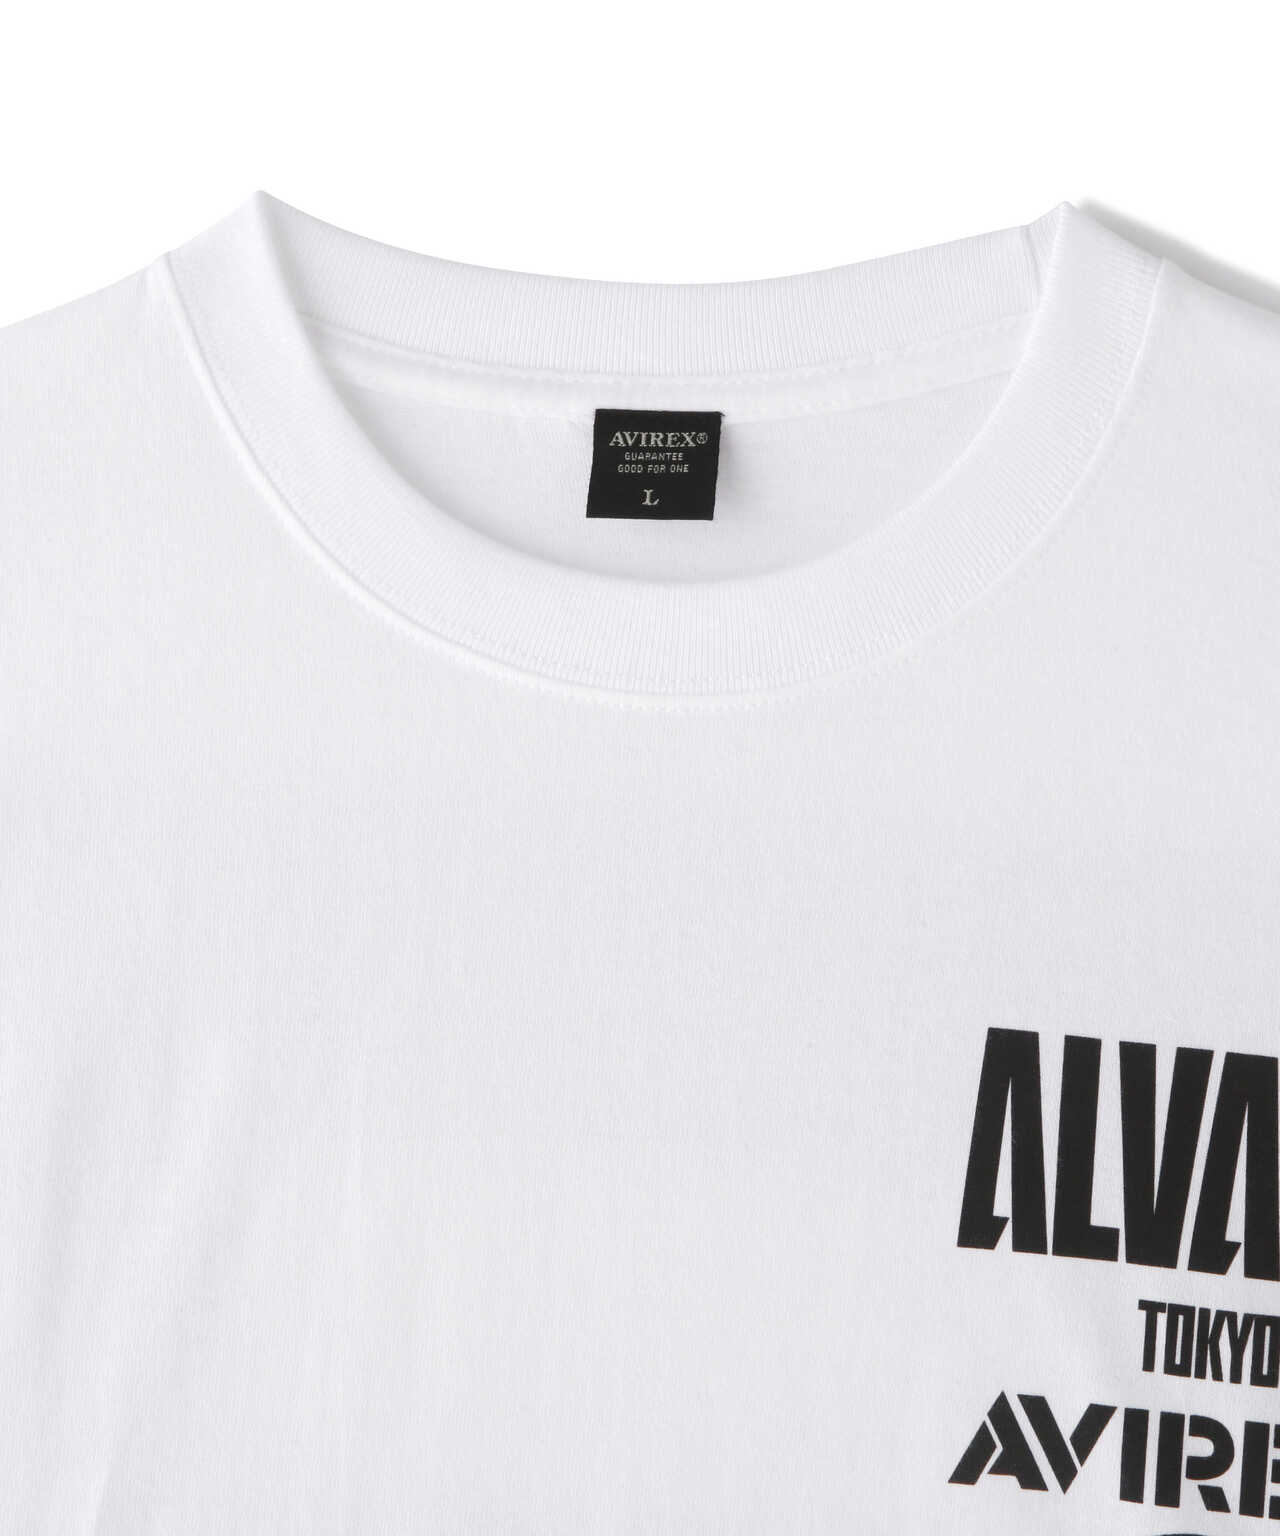 【ALVARK TOKYO ×AVIREX】アルバルク トウキョウ × AVIREX Tシャツ/ S/S T-SHIRT